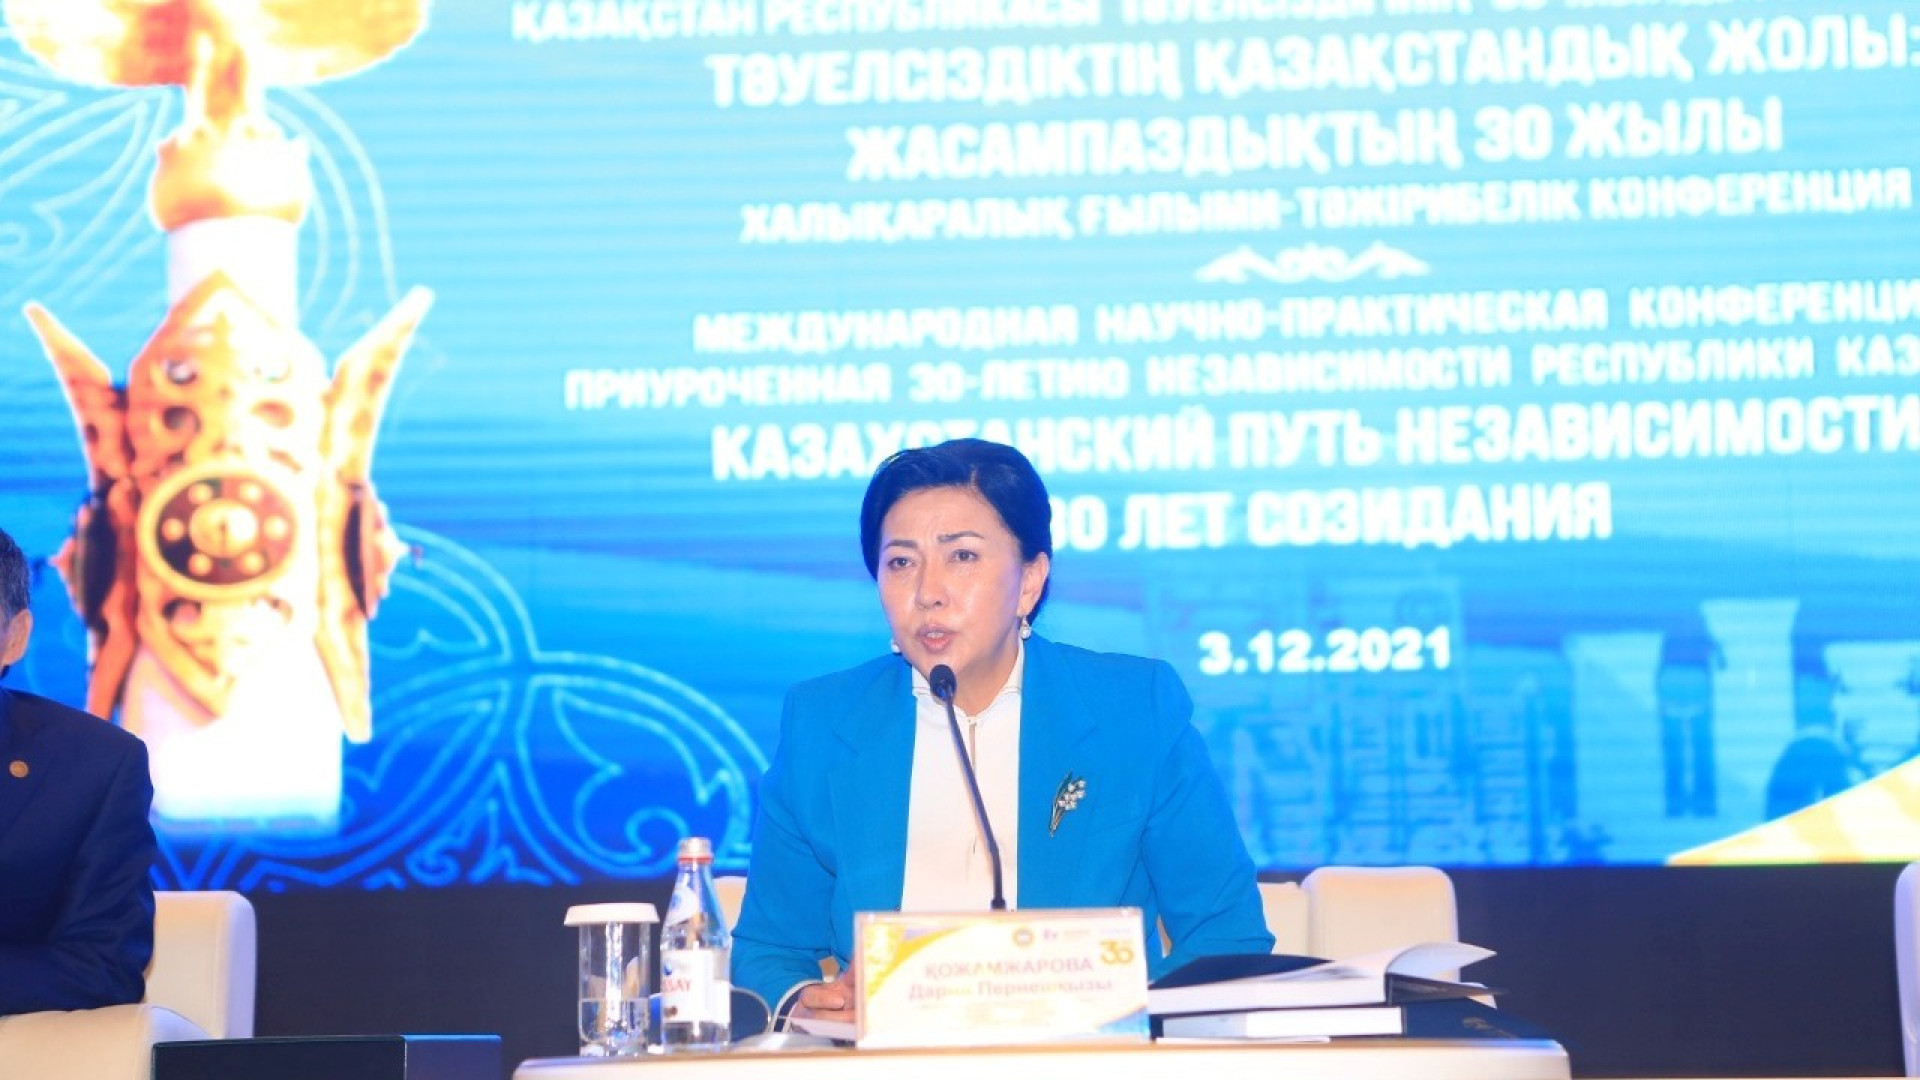 Казахстан 30 июня. Конференция по 30 летию независимости кр.